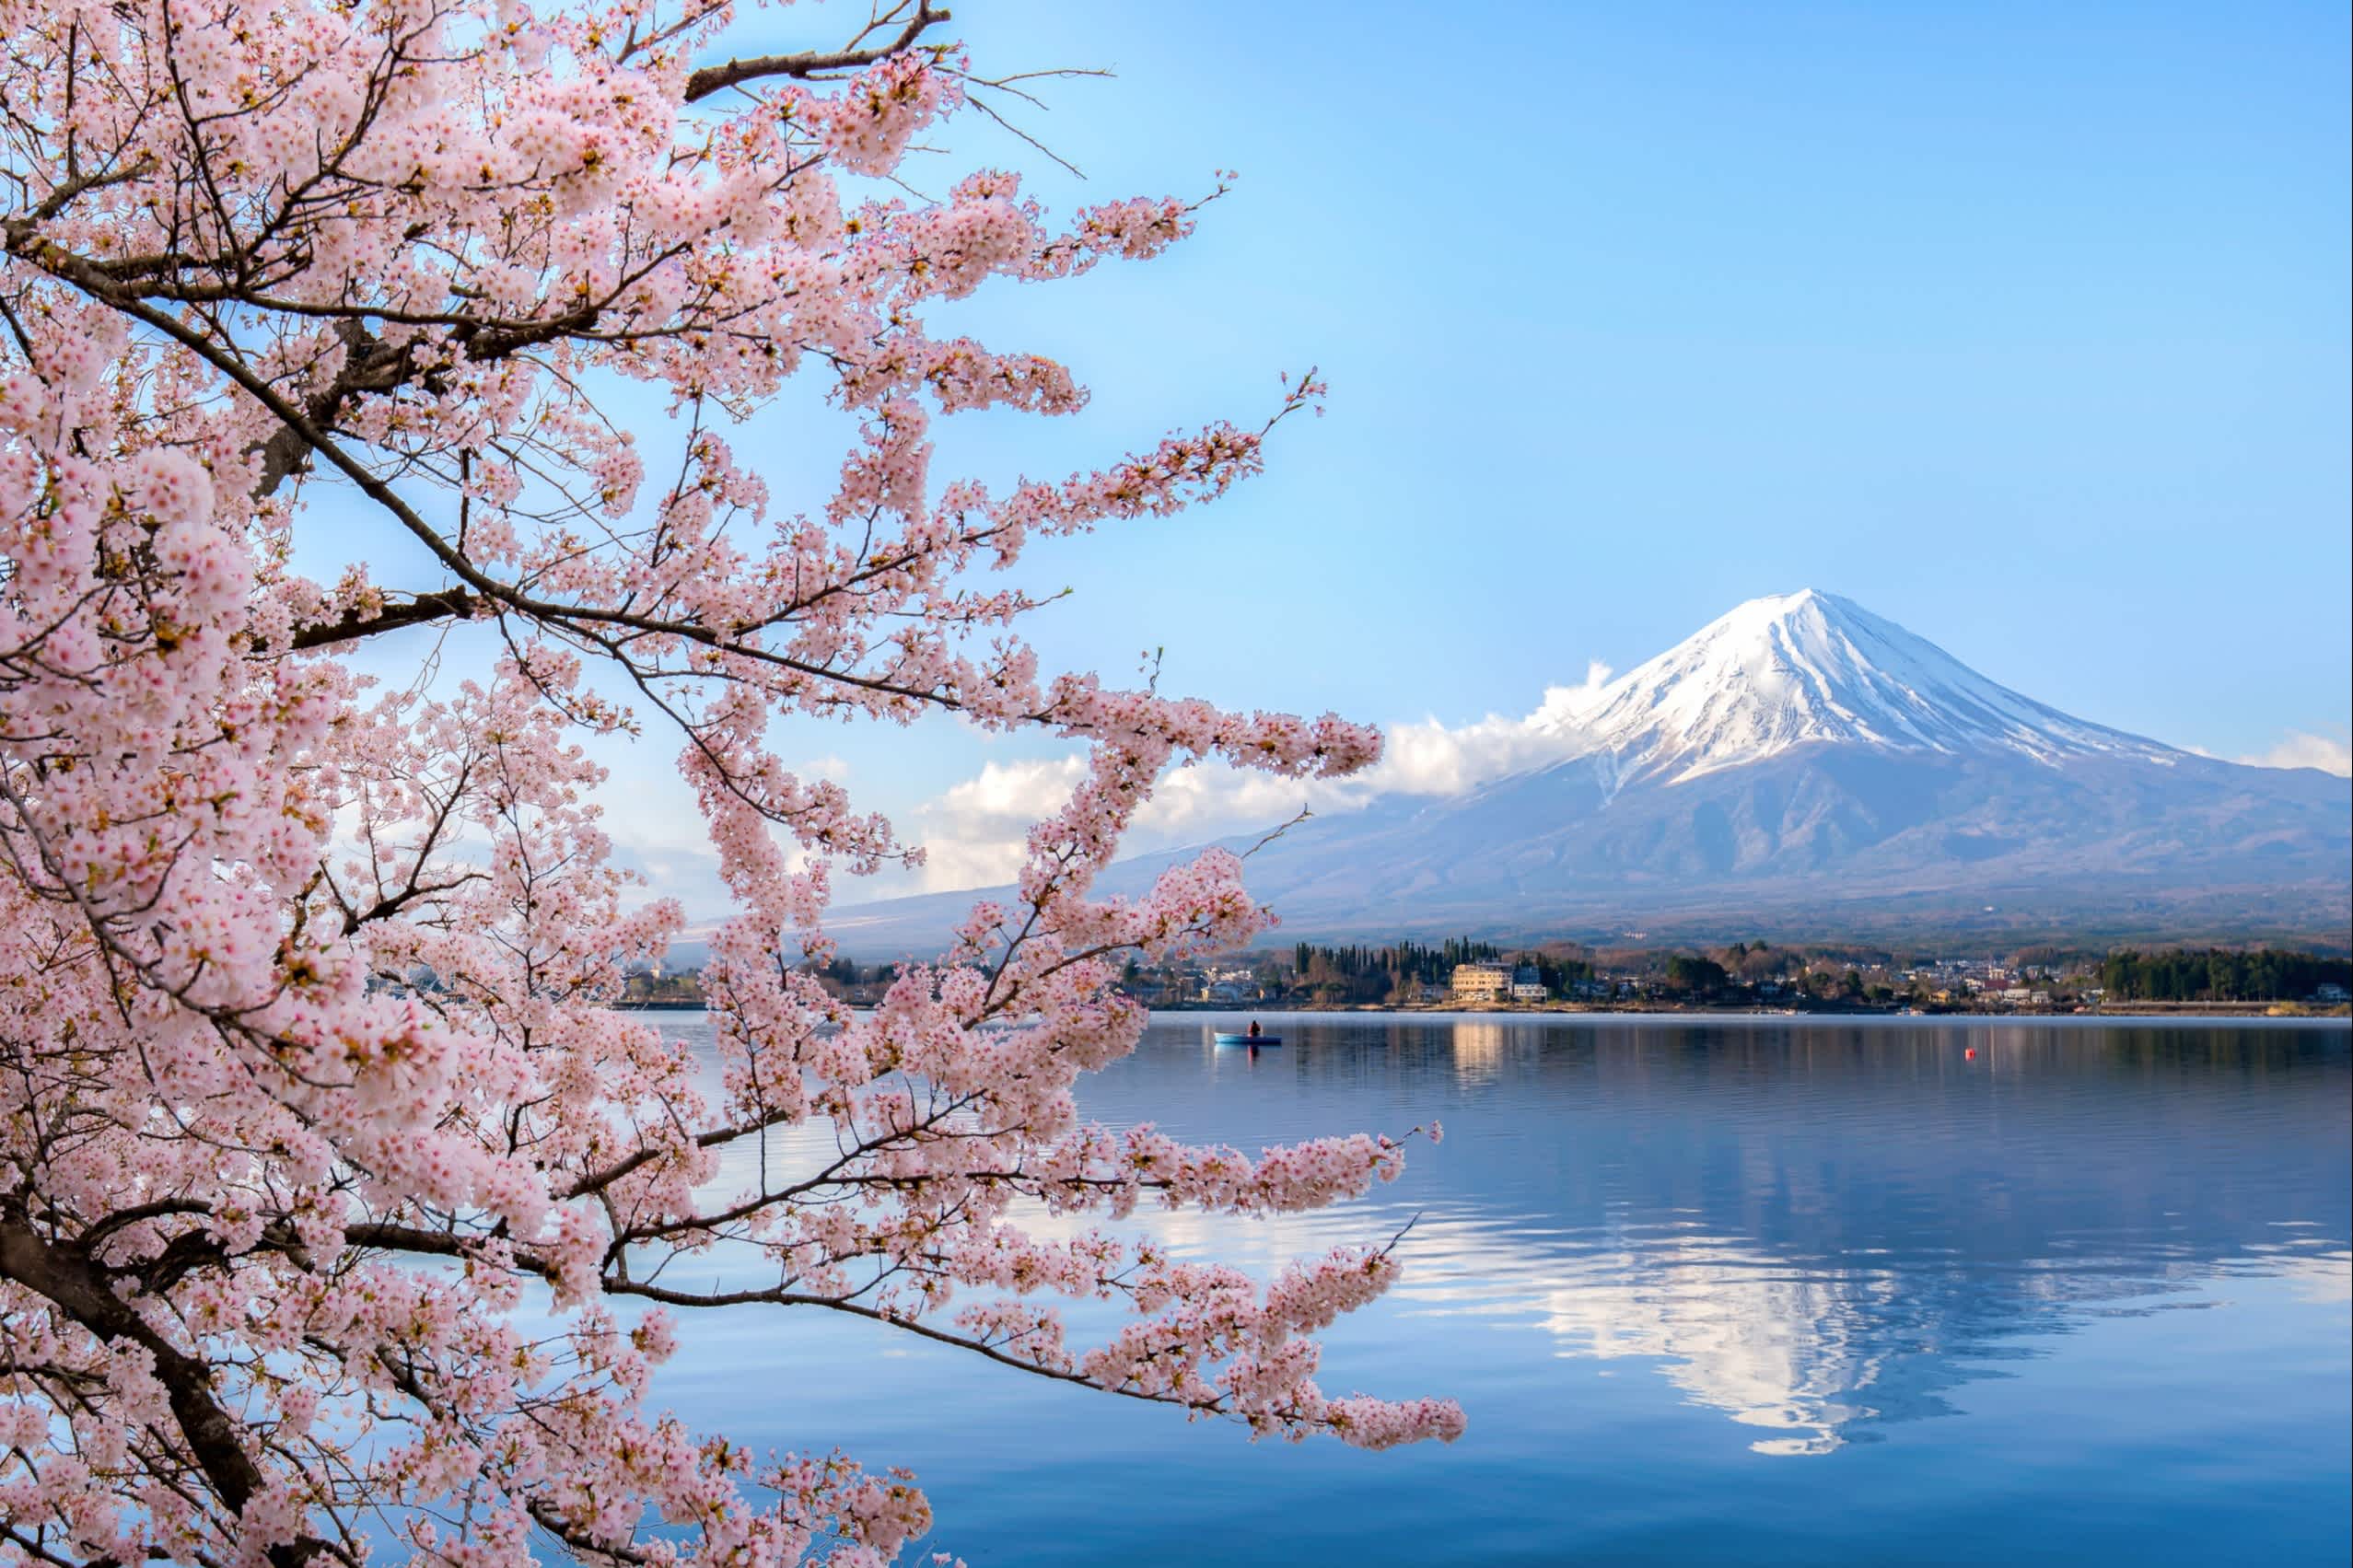 See und Kirschbäume zur Kirschblüte in Tokio Japan mit dem Mount Fuji im Hintergrund.